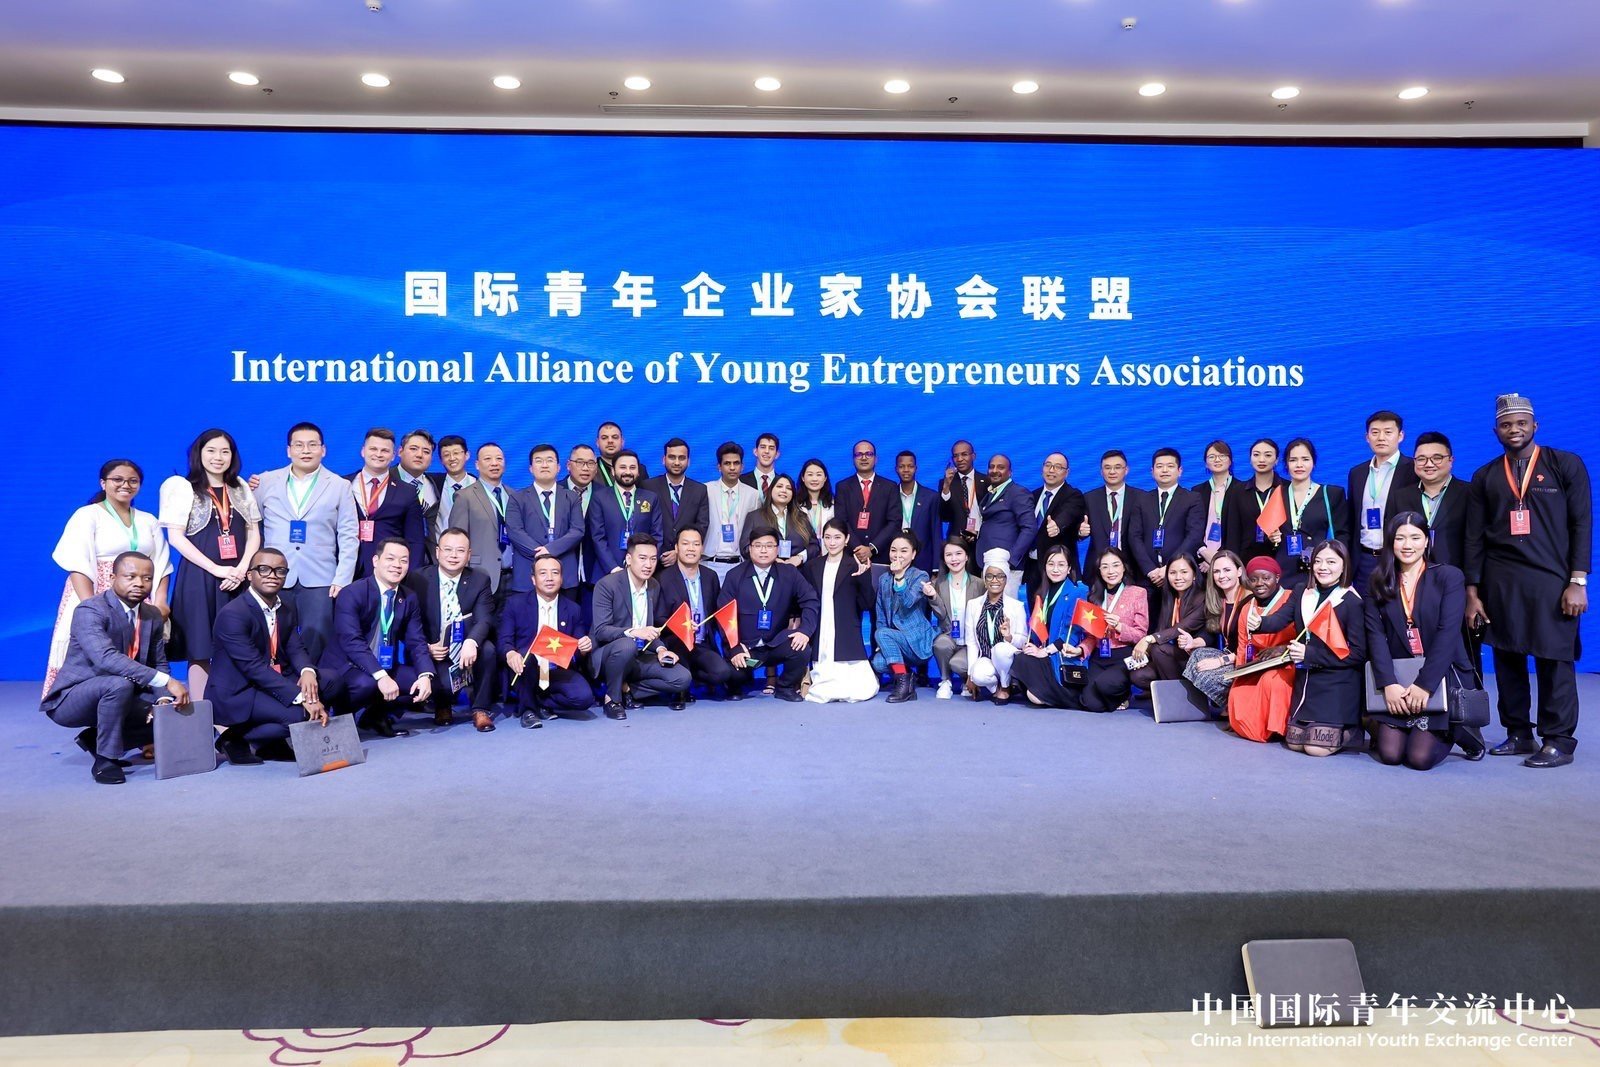 Liên minh Hội Doanh nhân trẻ quốc tế đã được thành lập và ra mắt trong khuôn khổ Hội nghị. 